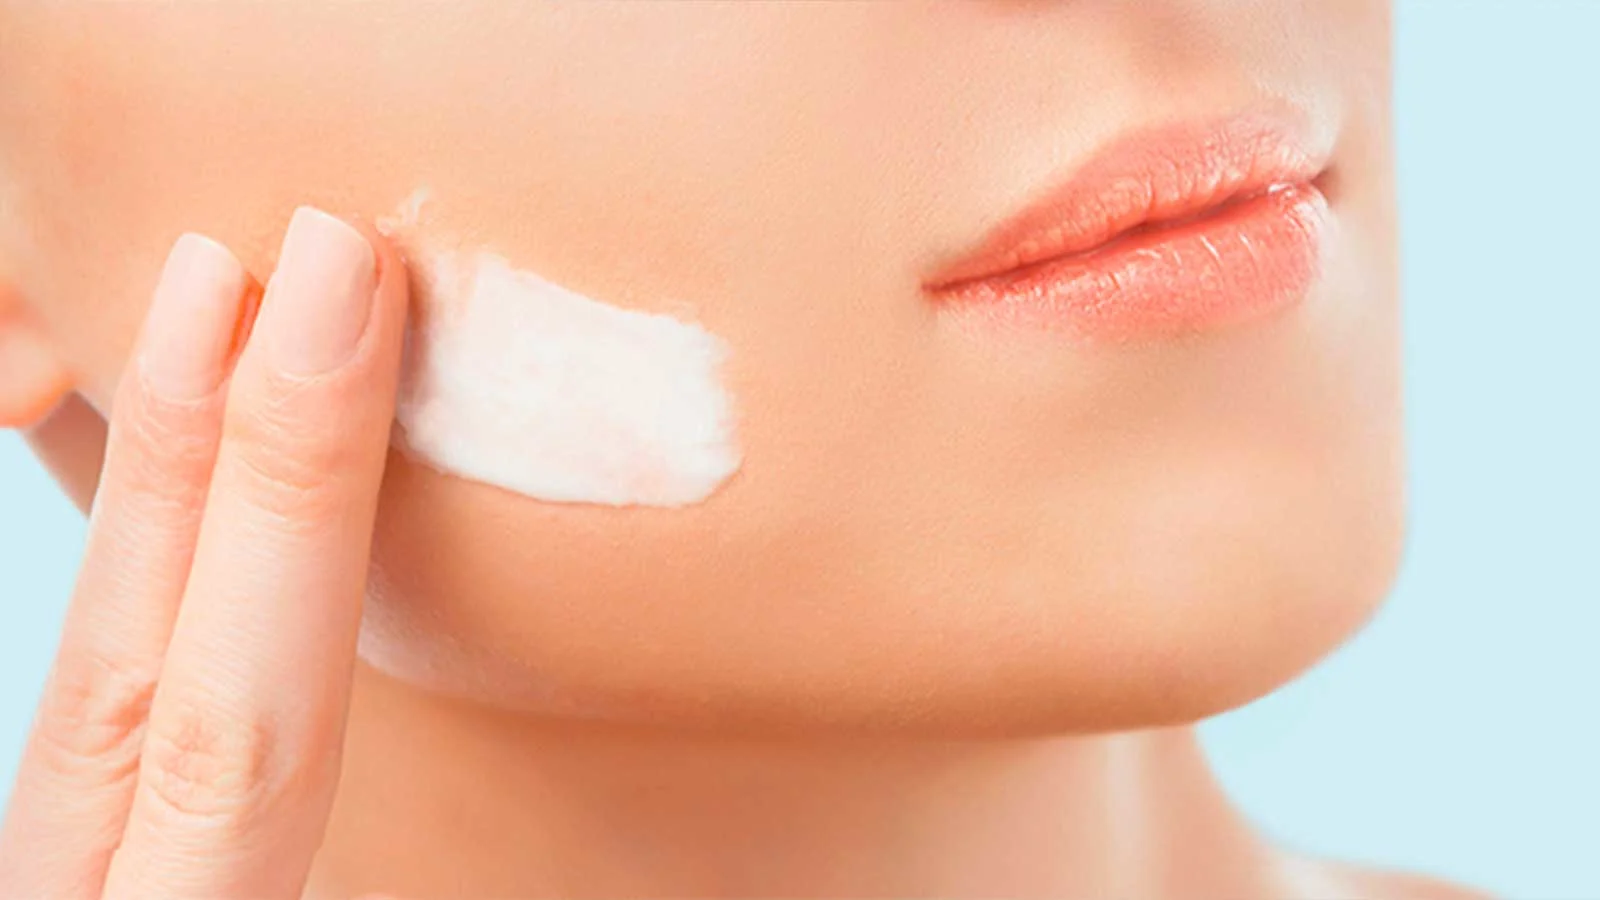 Aplique gel o crema de afeitar y ayude a que la hoja de afeitar se deslice más fácilmente, evite volver a afeitarse y la irritación de la piel.